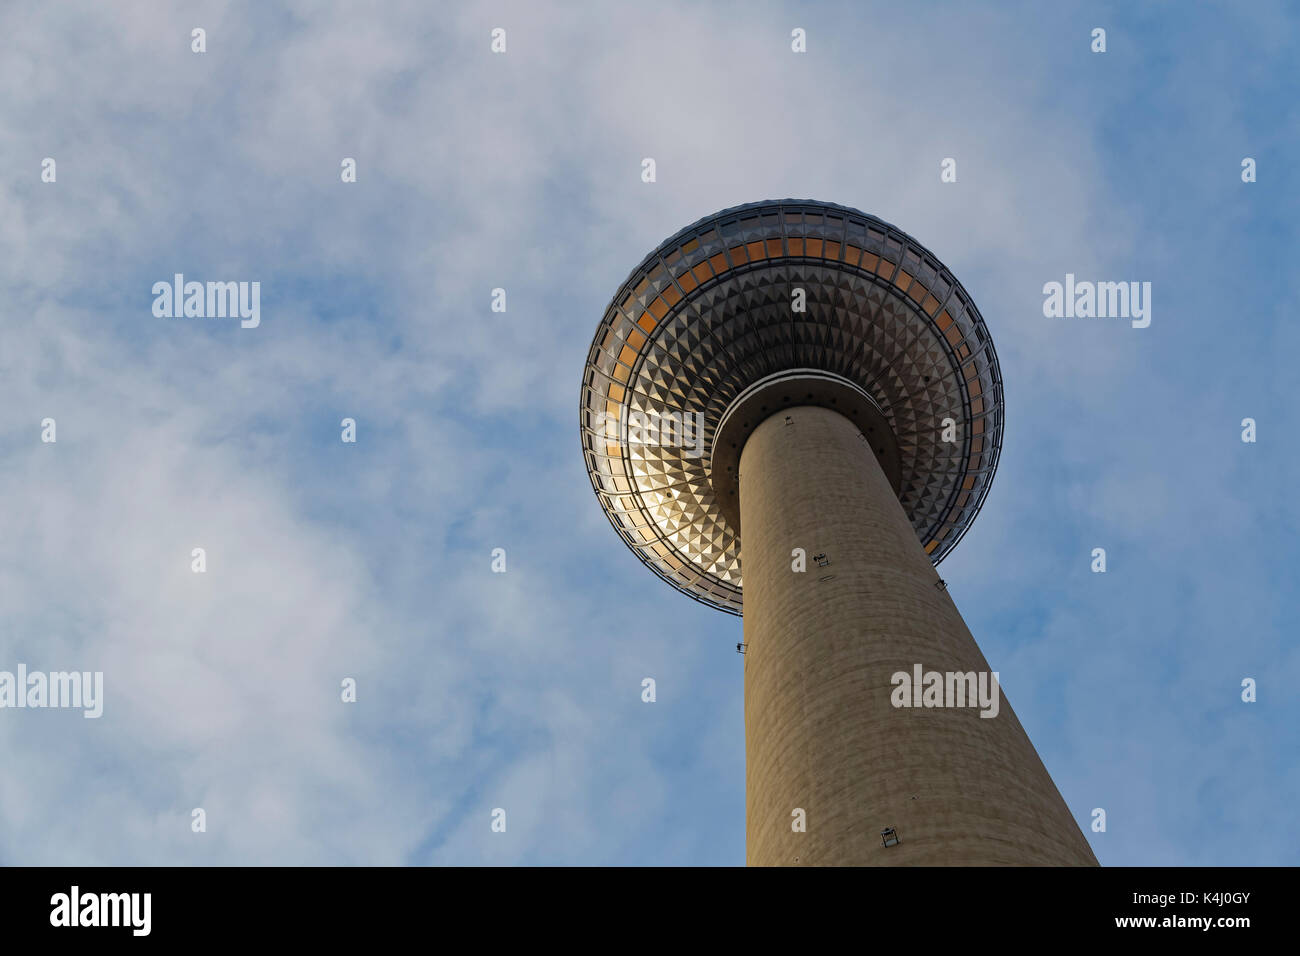 Alex de la torre de televisión de Alexanderplatz, Berlín, Alemania Foto de stock